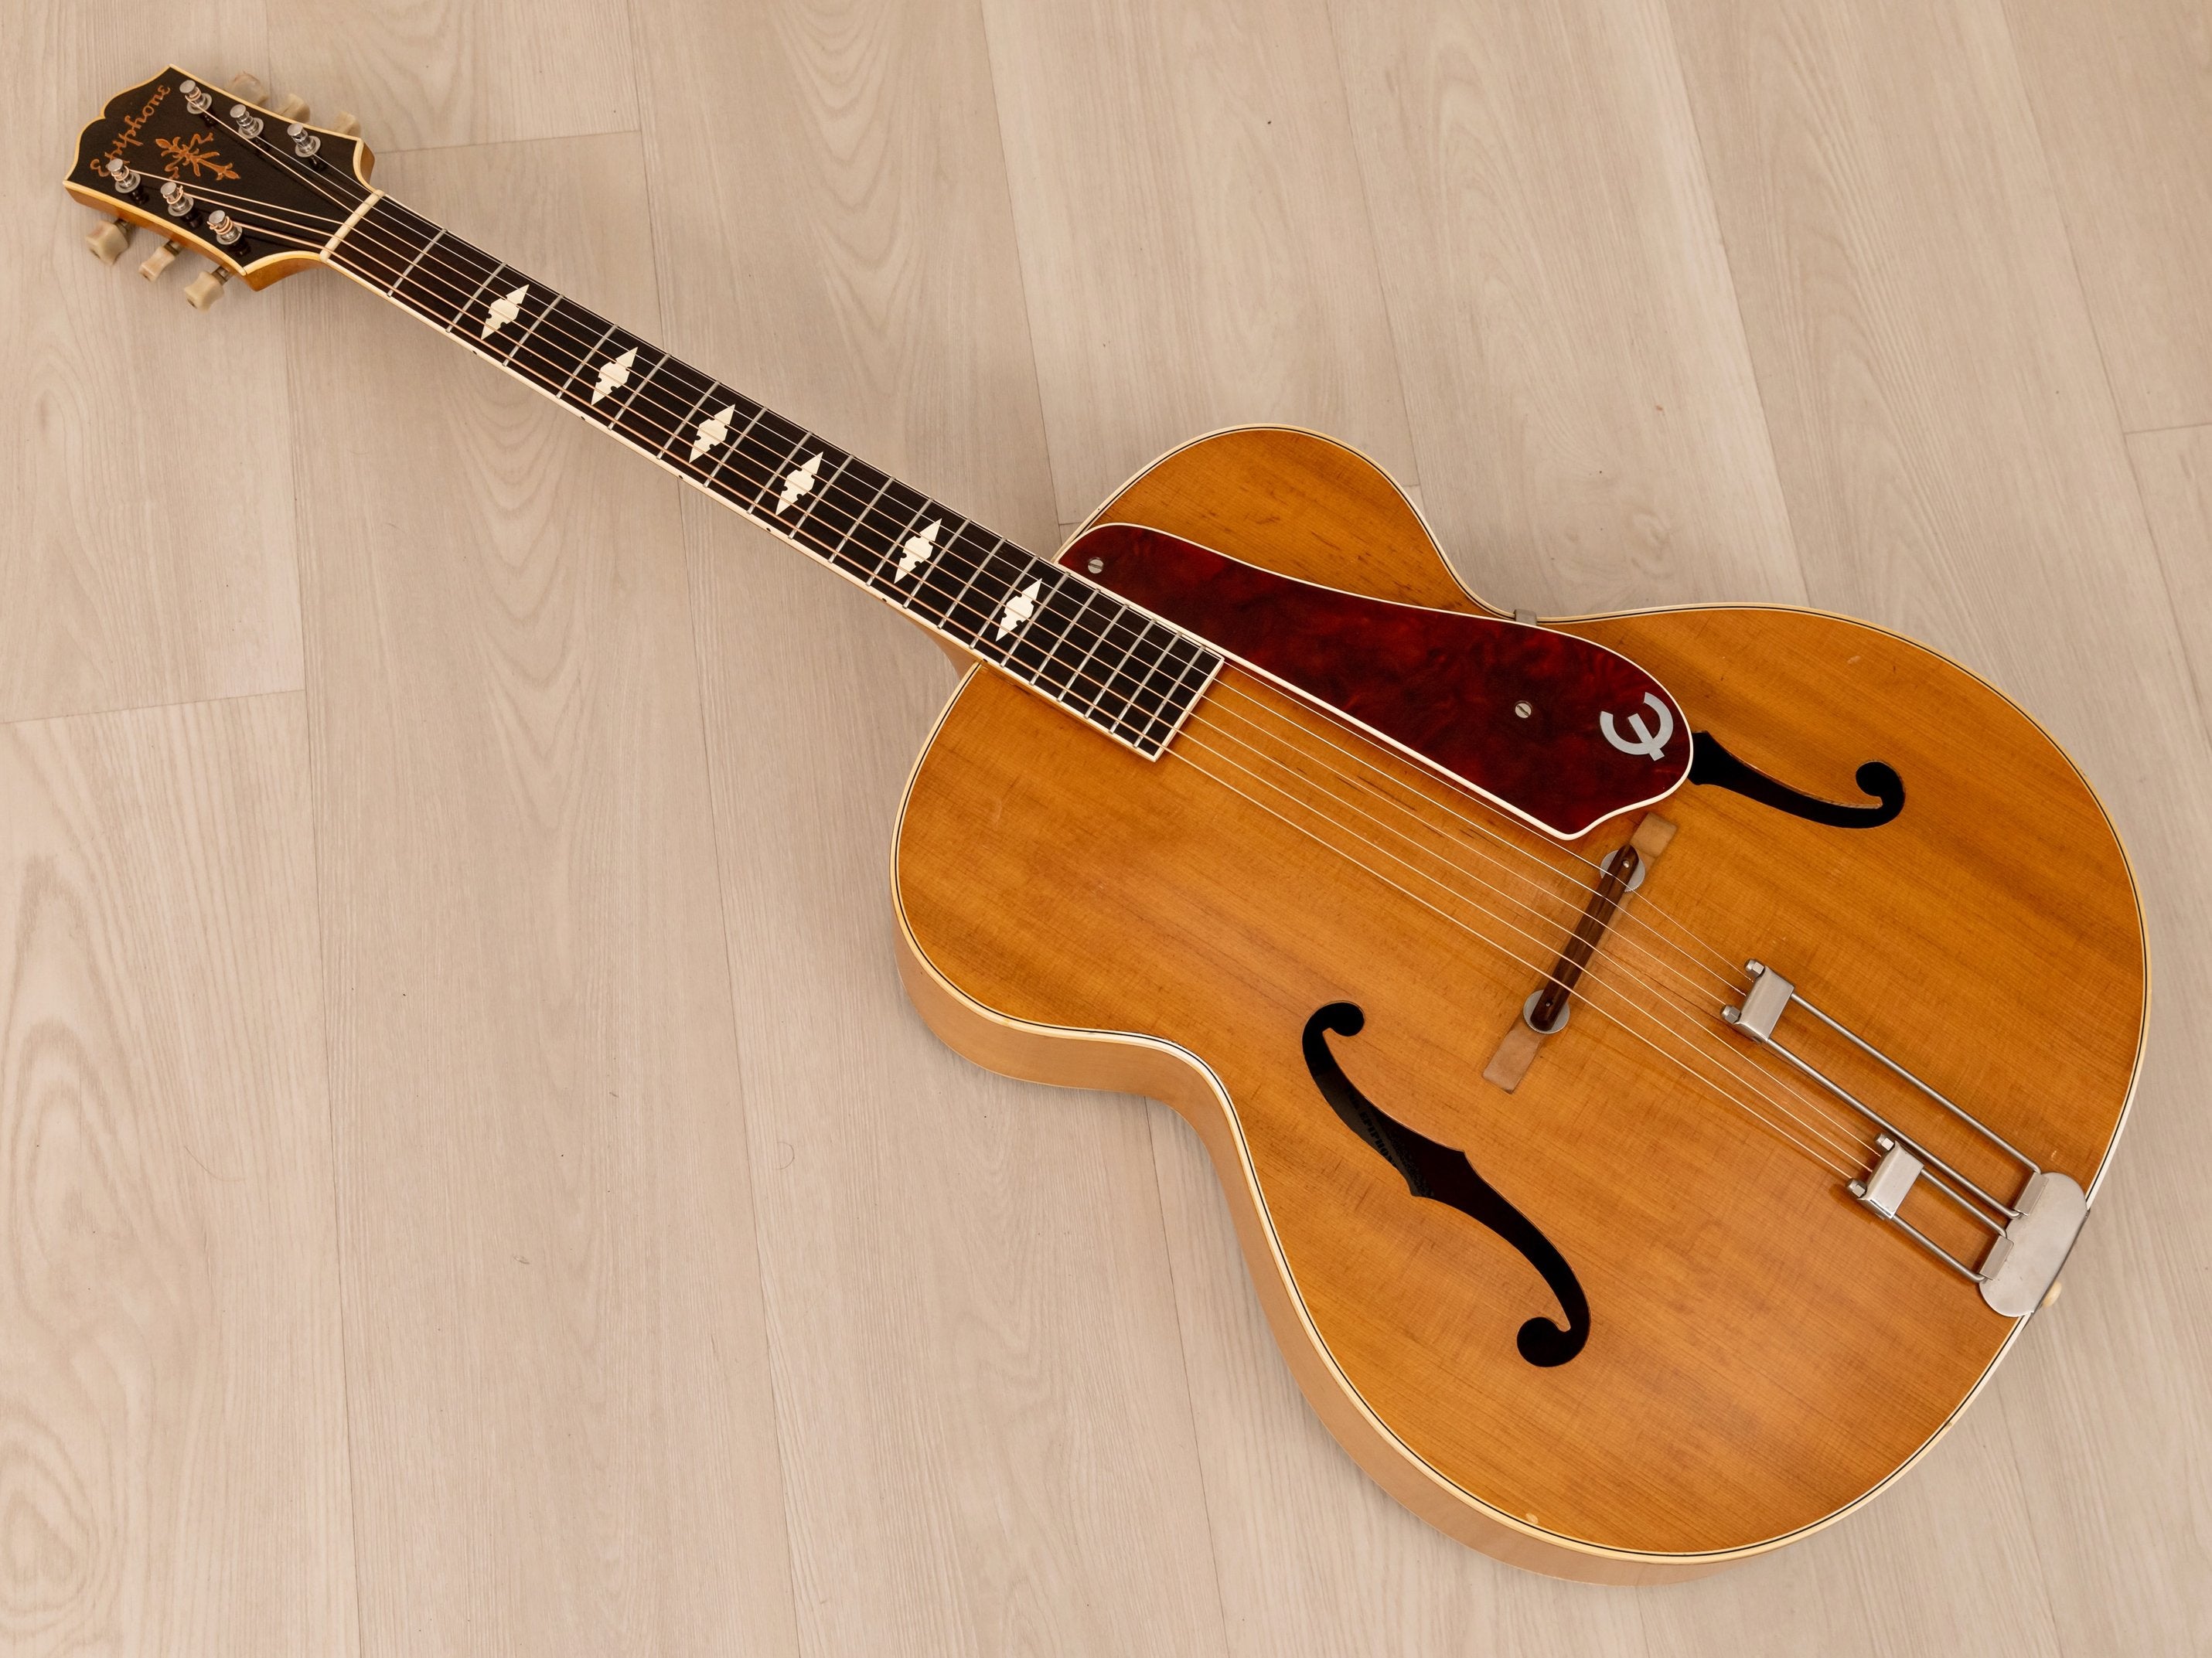 1946 Epiphone Triumph Vintage Archtop Acoustic Guitar Blonde w/ Case